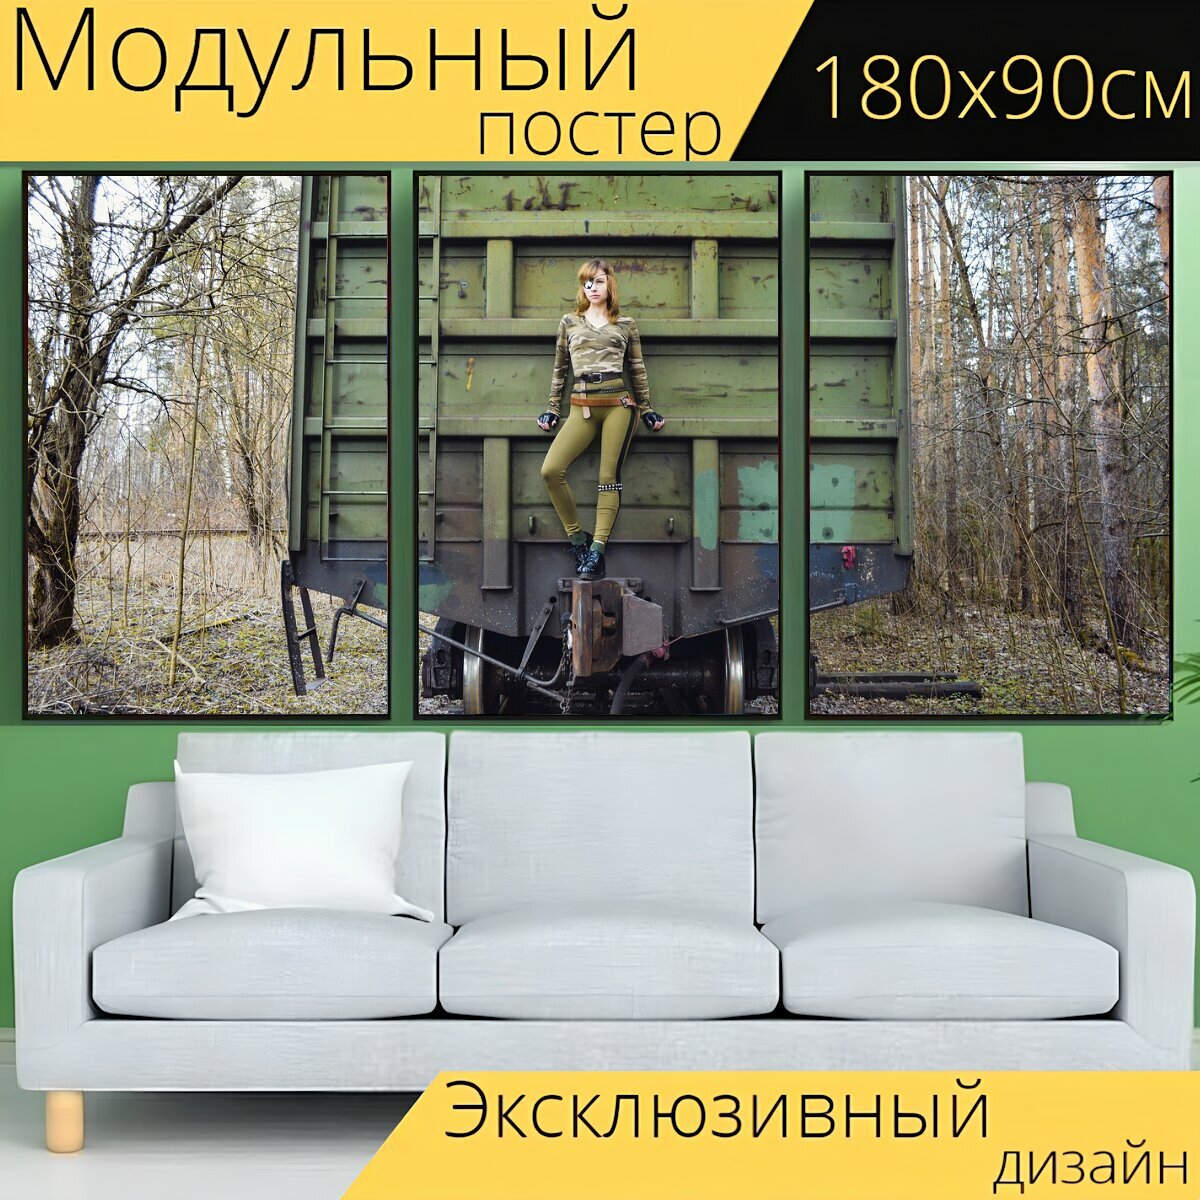 Модульный постер "Поезд, вагоны, женщина" 180 x 90 см. для интерьера